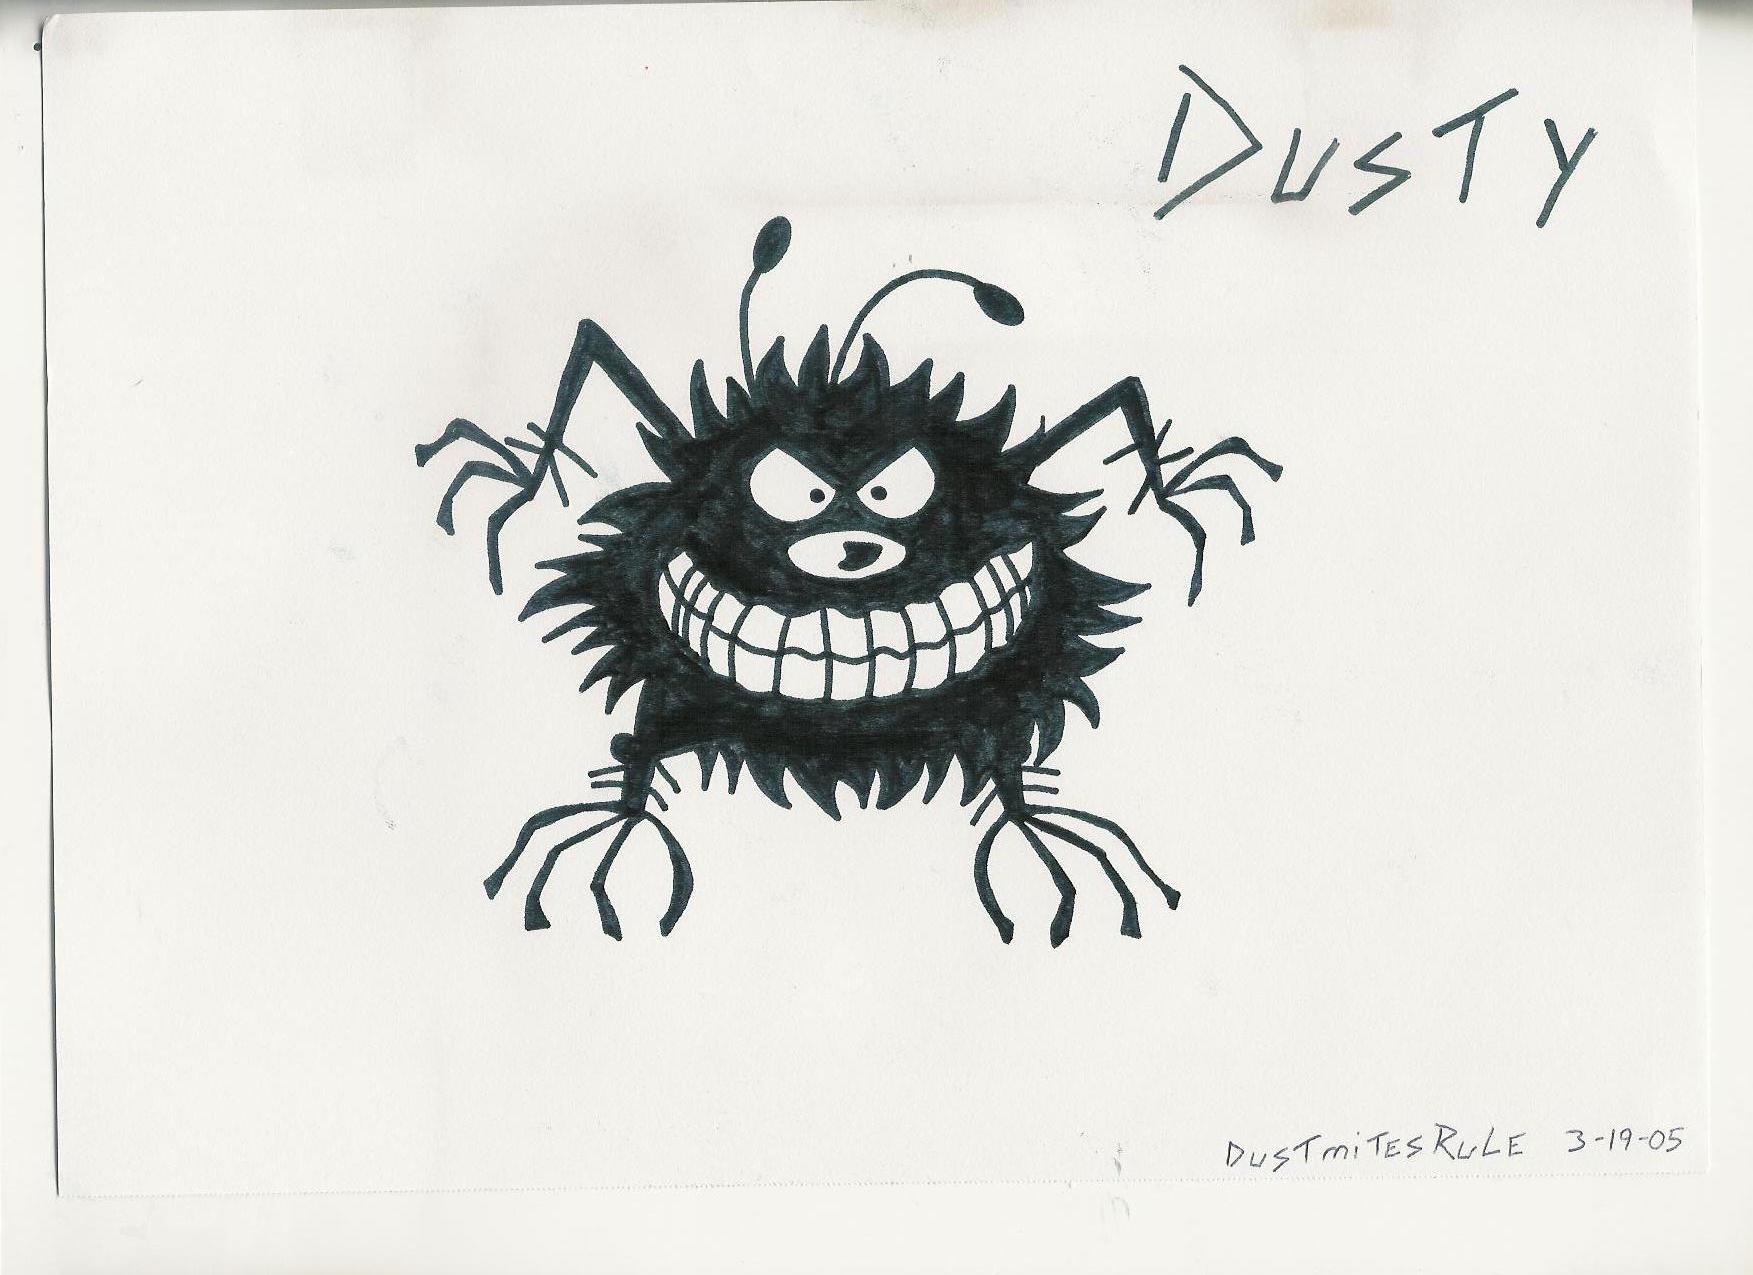 Dusty The Dustmite by DustmitesRule